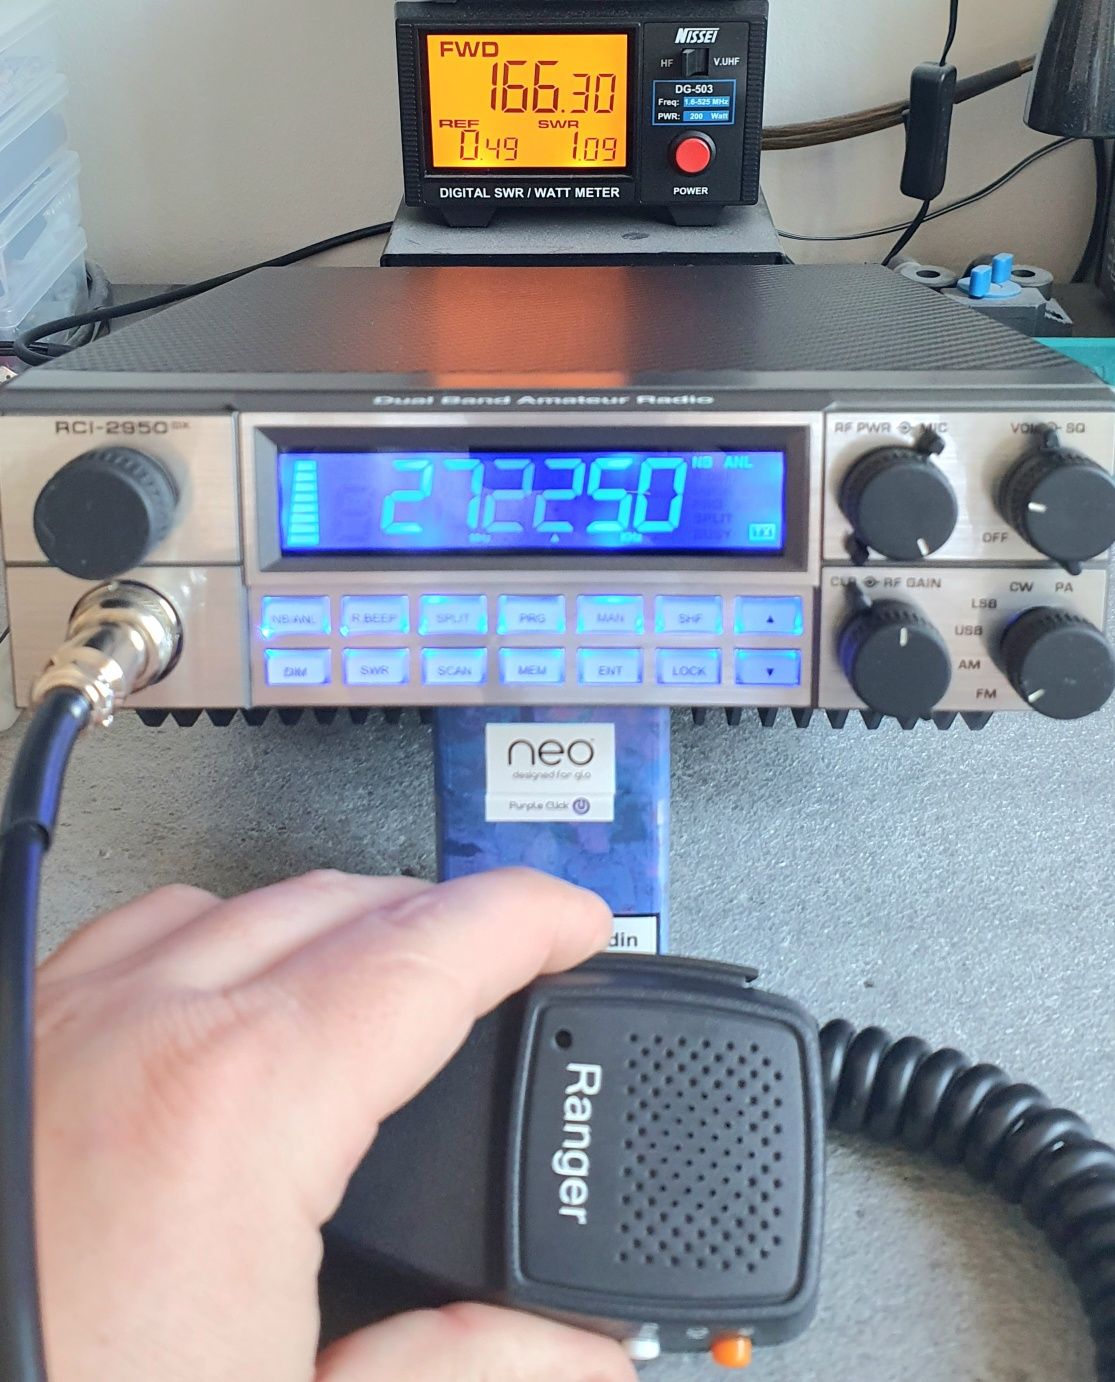 Statie radio CB (Transceiver) - RANGER RCI-2950DX (166W)*noua/garantie